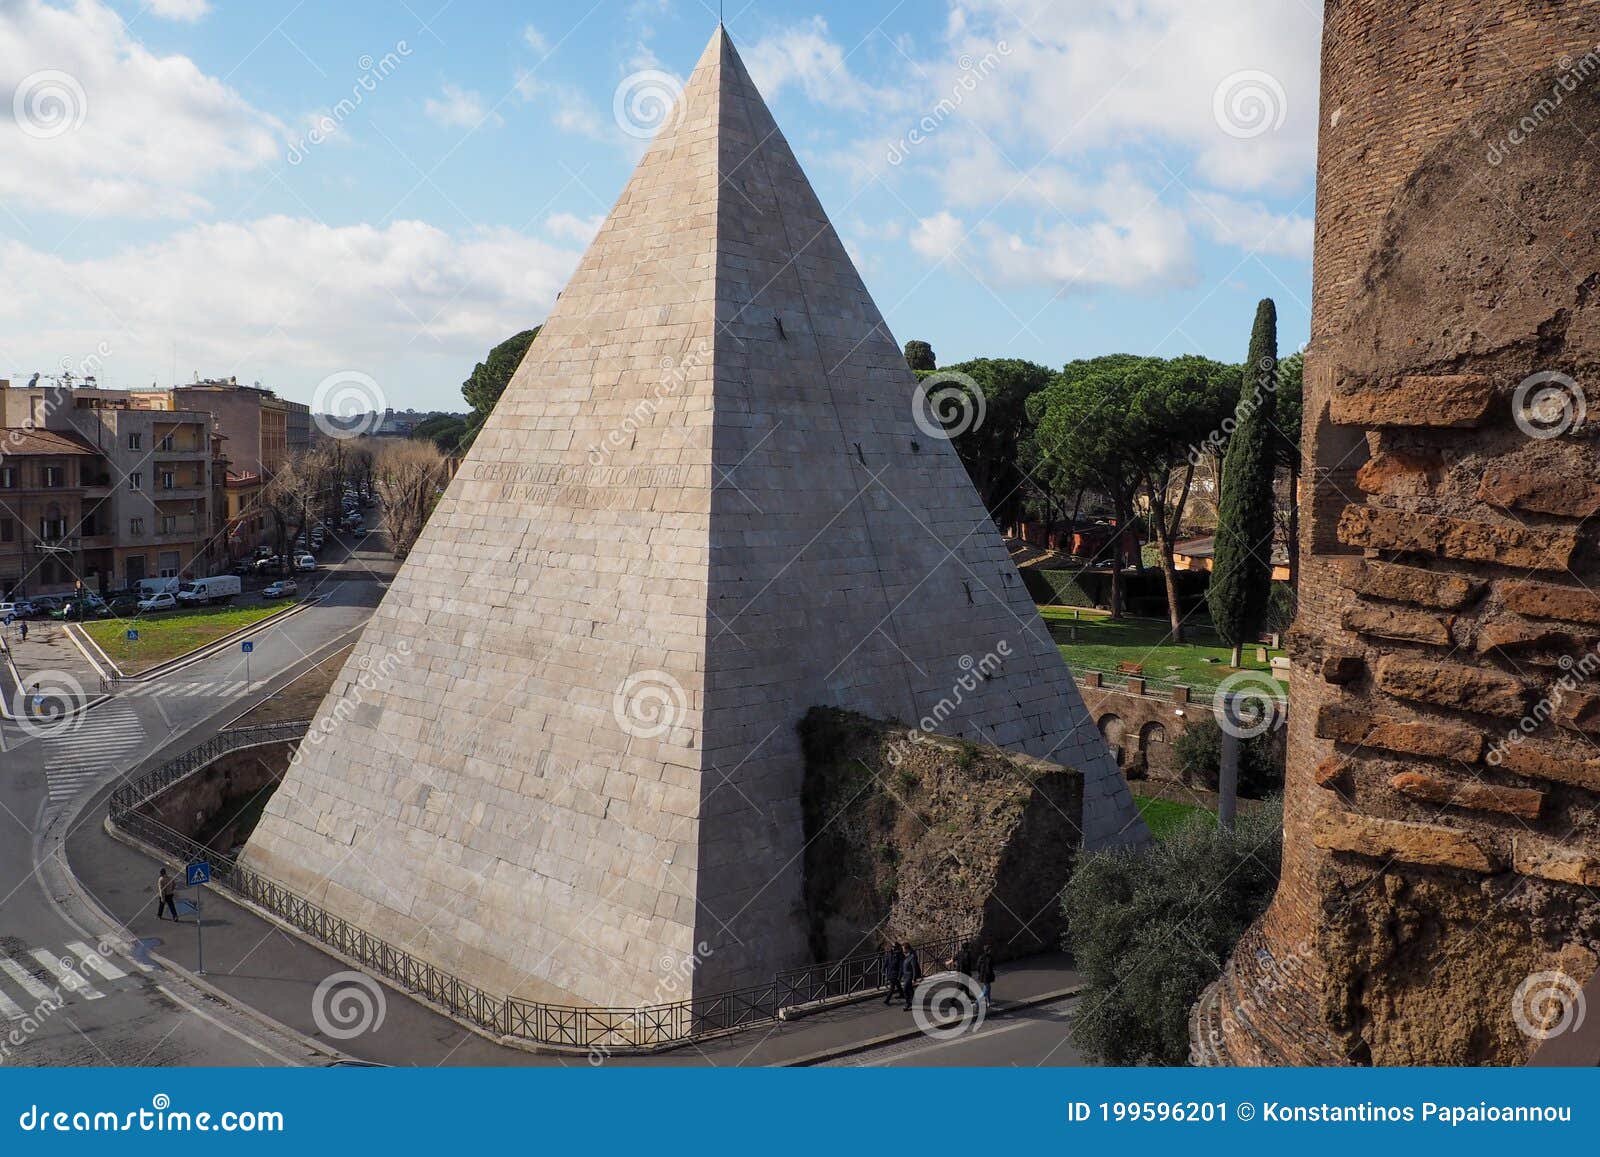 The Pyramid Of Cestius Piramide Di Caio Cestio Or Piramide Cestia And ...